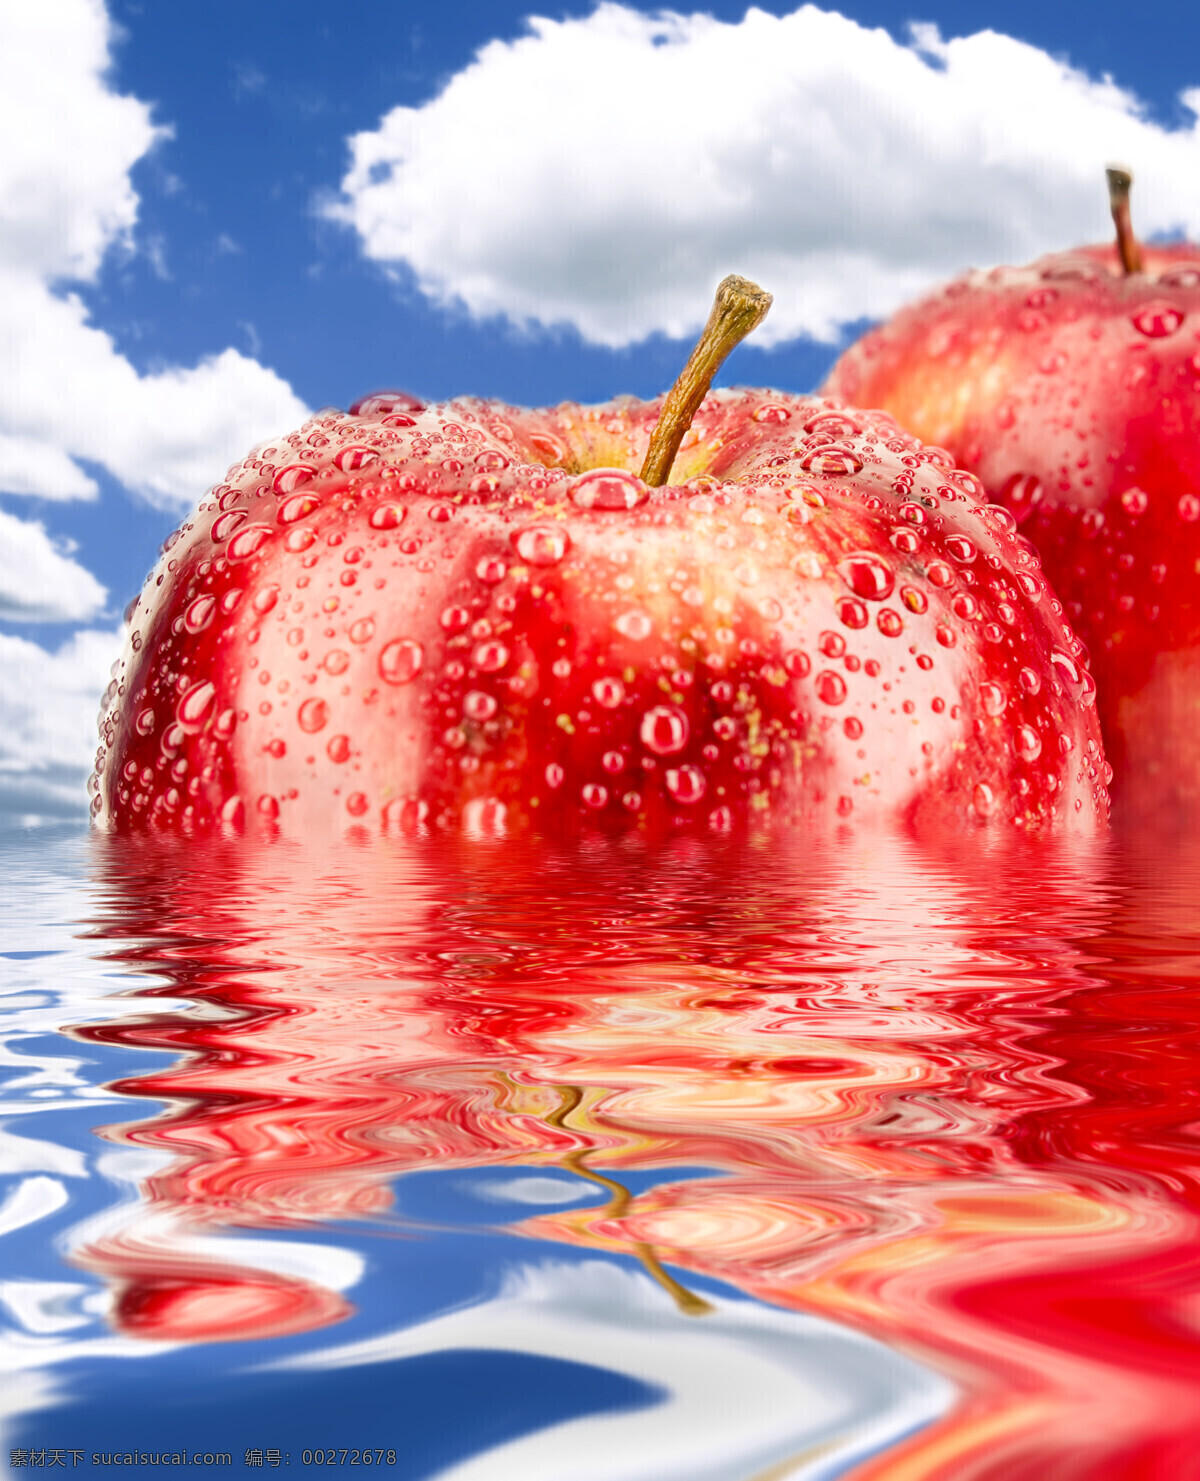 白云 倒影 高清水果图片 果实 红苹果 蓝天 苹果 水中 设计素材 模板下载 水中的苹果 水珠 水滴 水纹 新鲜 果肉 生物世界 水果 psd源文件